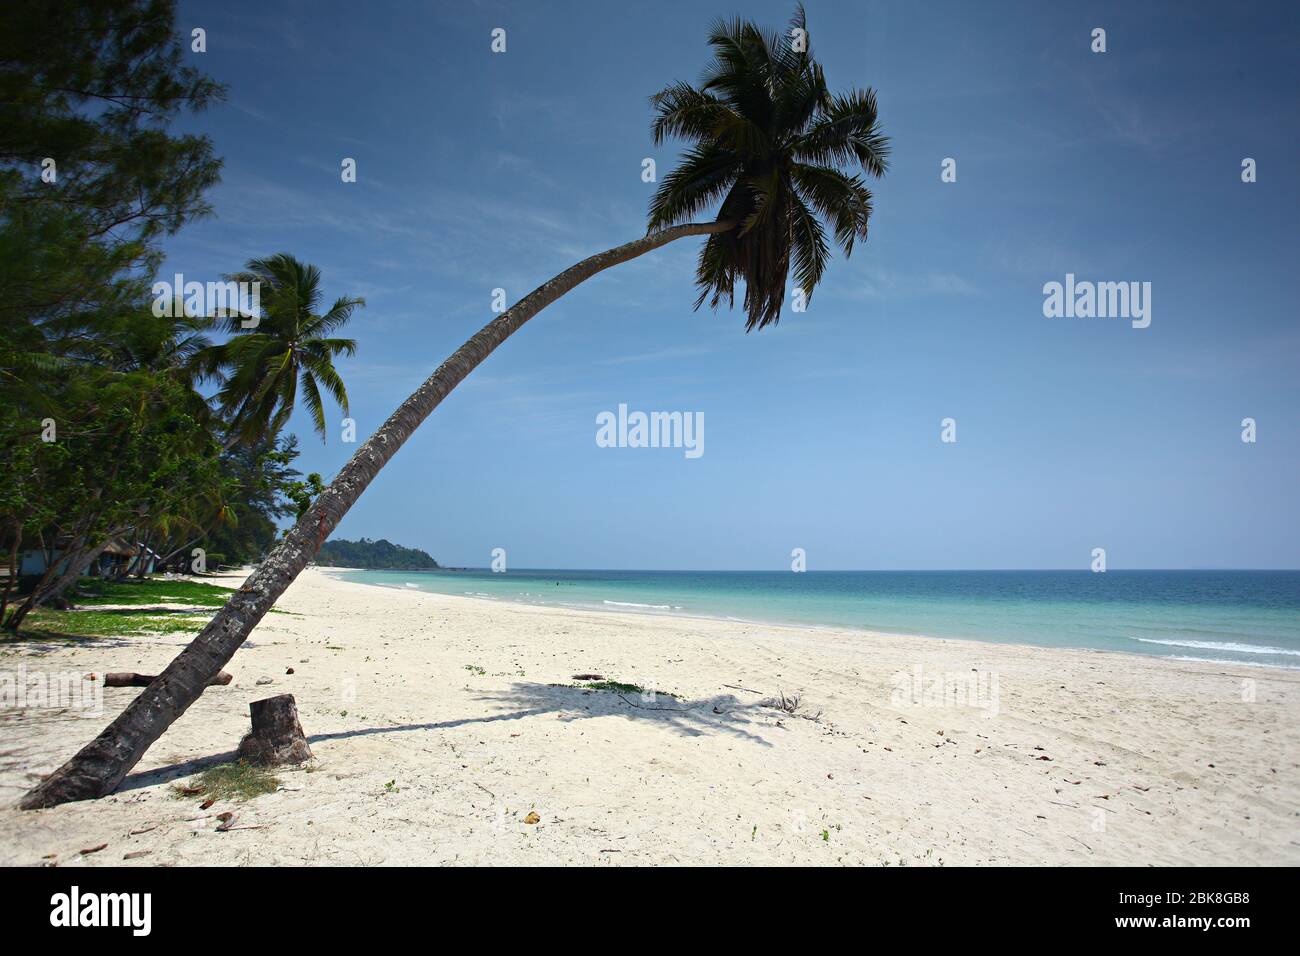 Cococotier ou palmier à Thung Wua Laen Beach dans la province de Chumphon en Thaïlande, point de vue de la plage tropicale en bord de mer et ciel bleu Banque D'Images